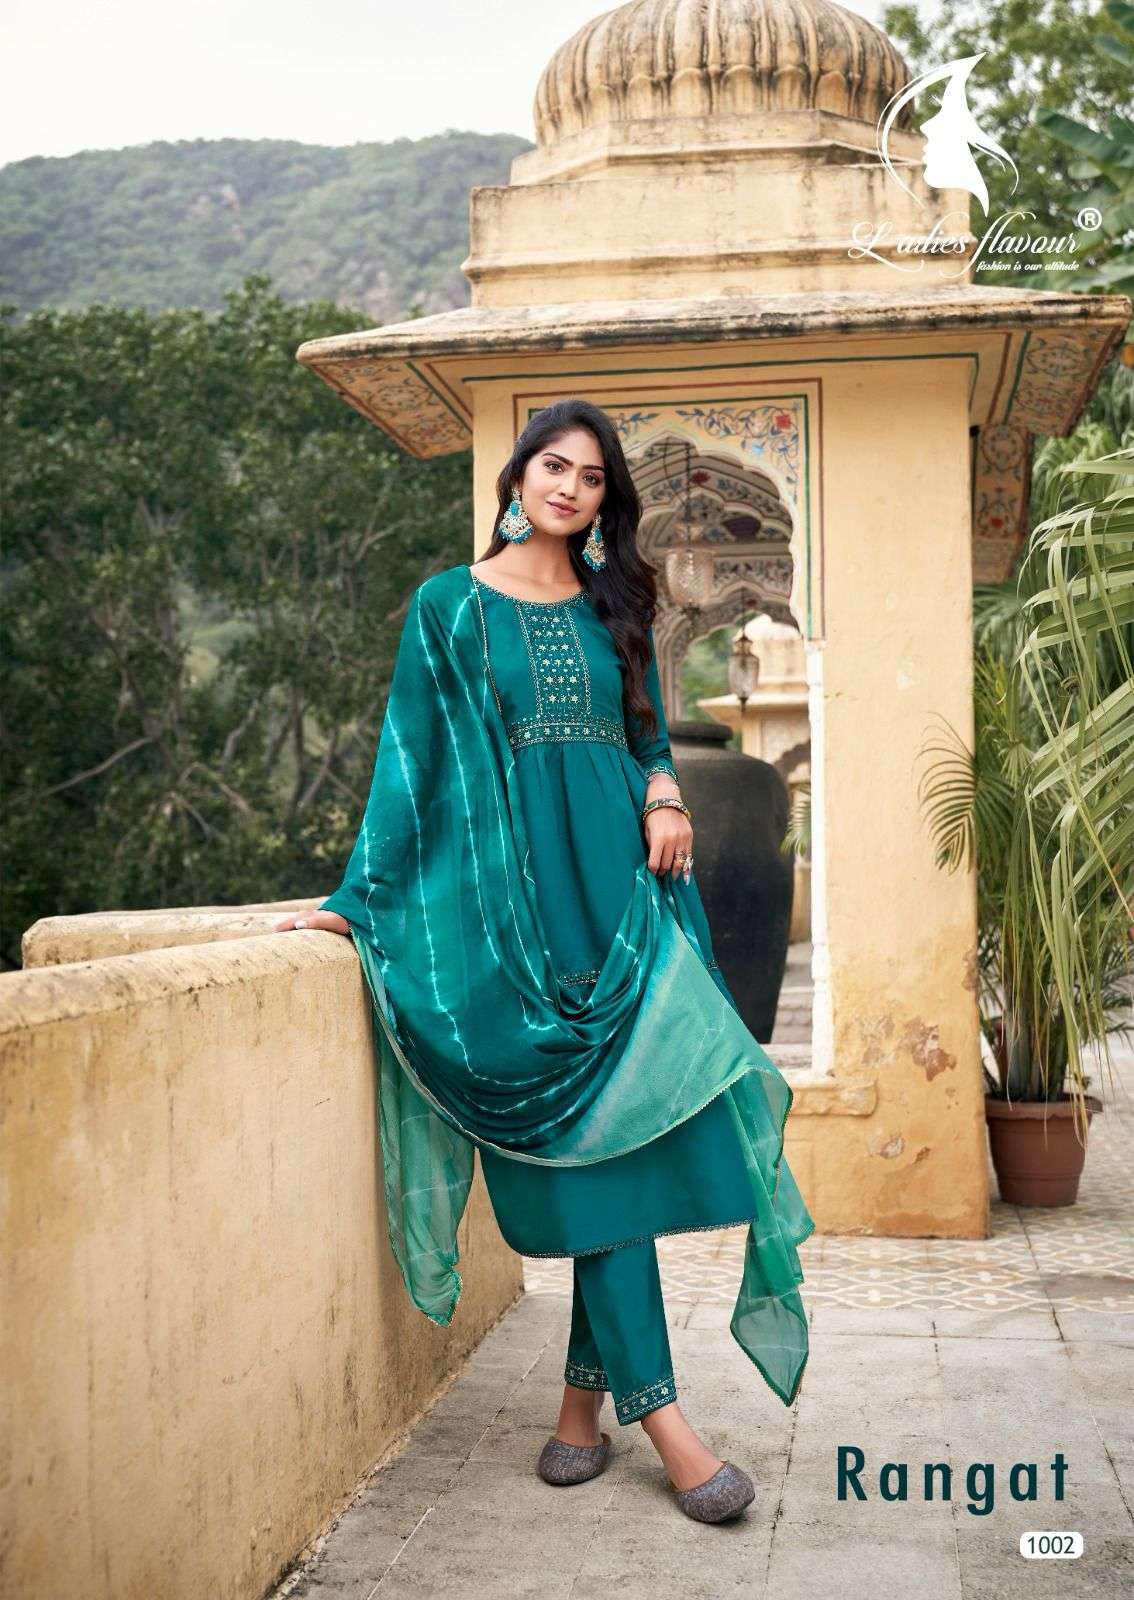 ladies flavour rangat series designer wedding wear kurti set wholesaler surat gujarat